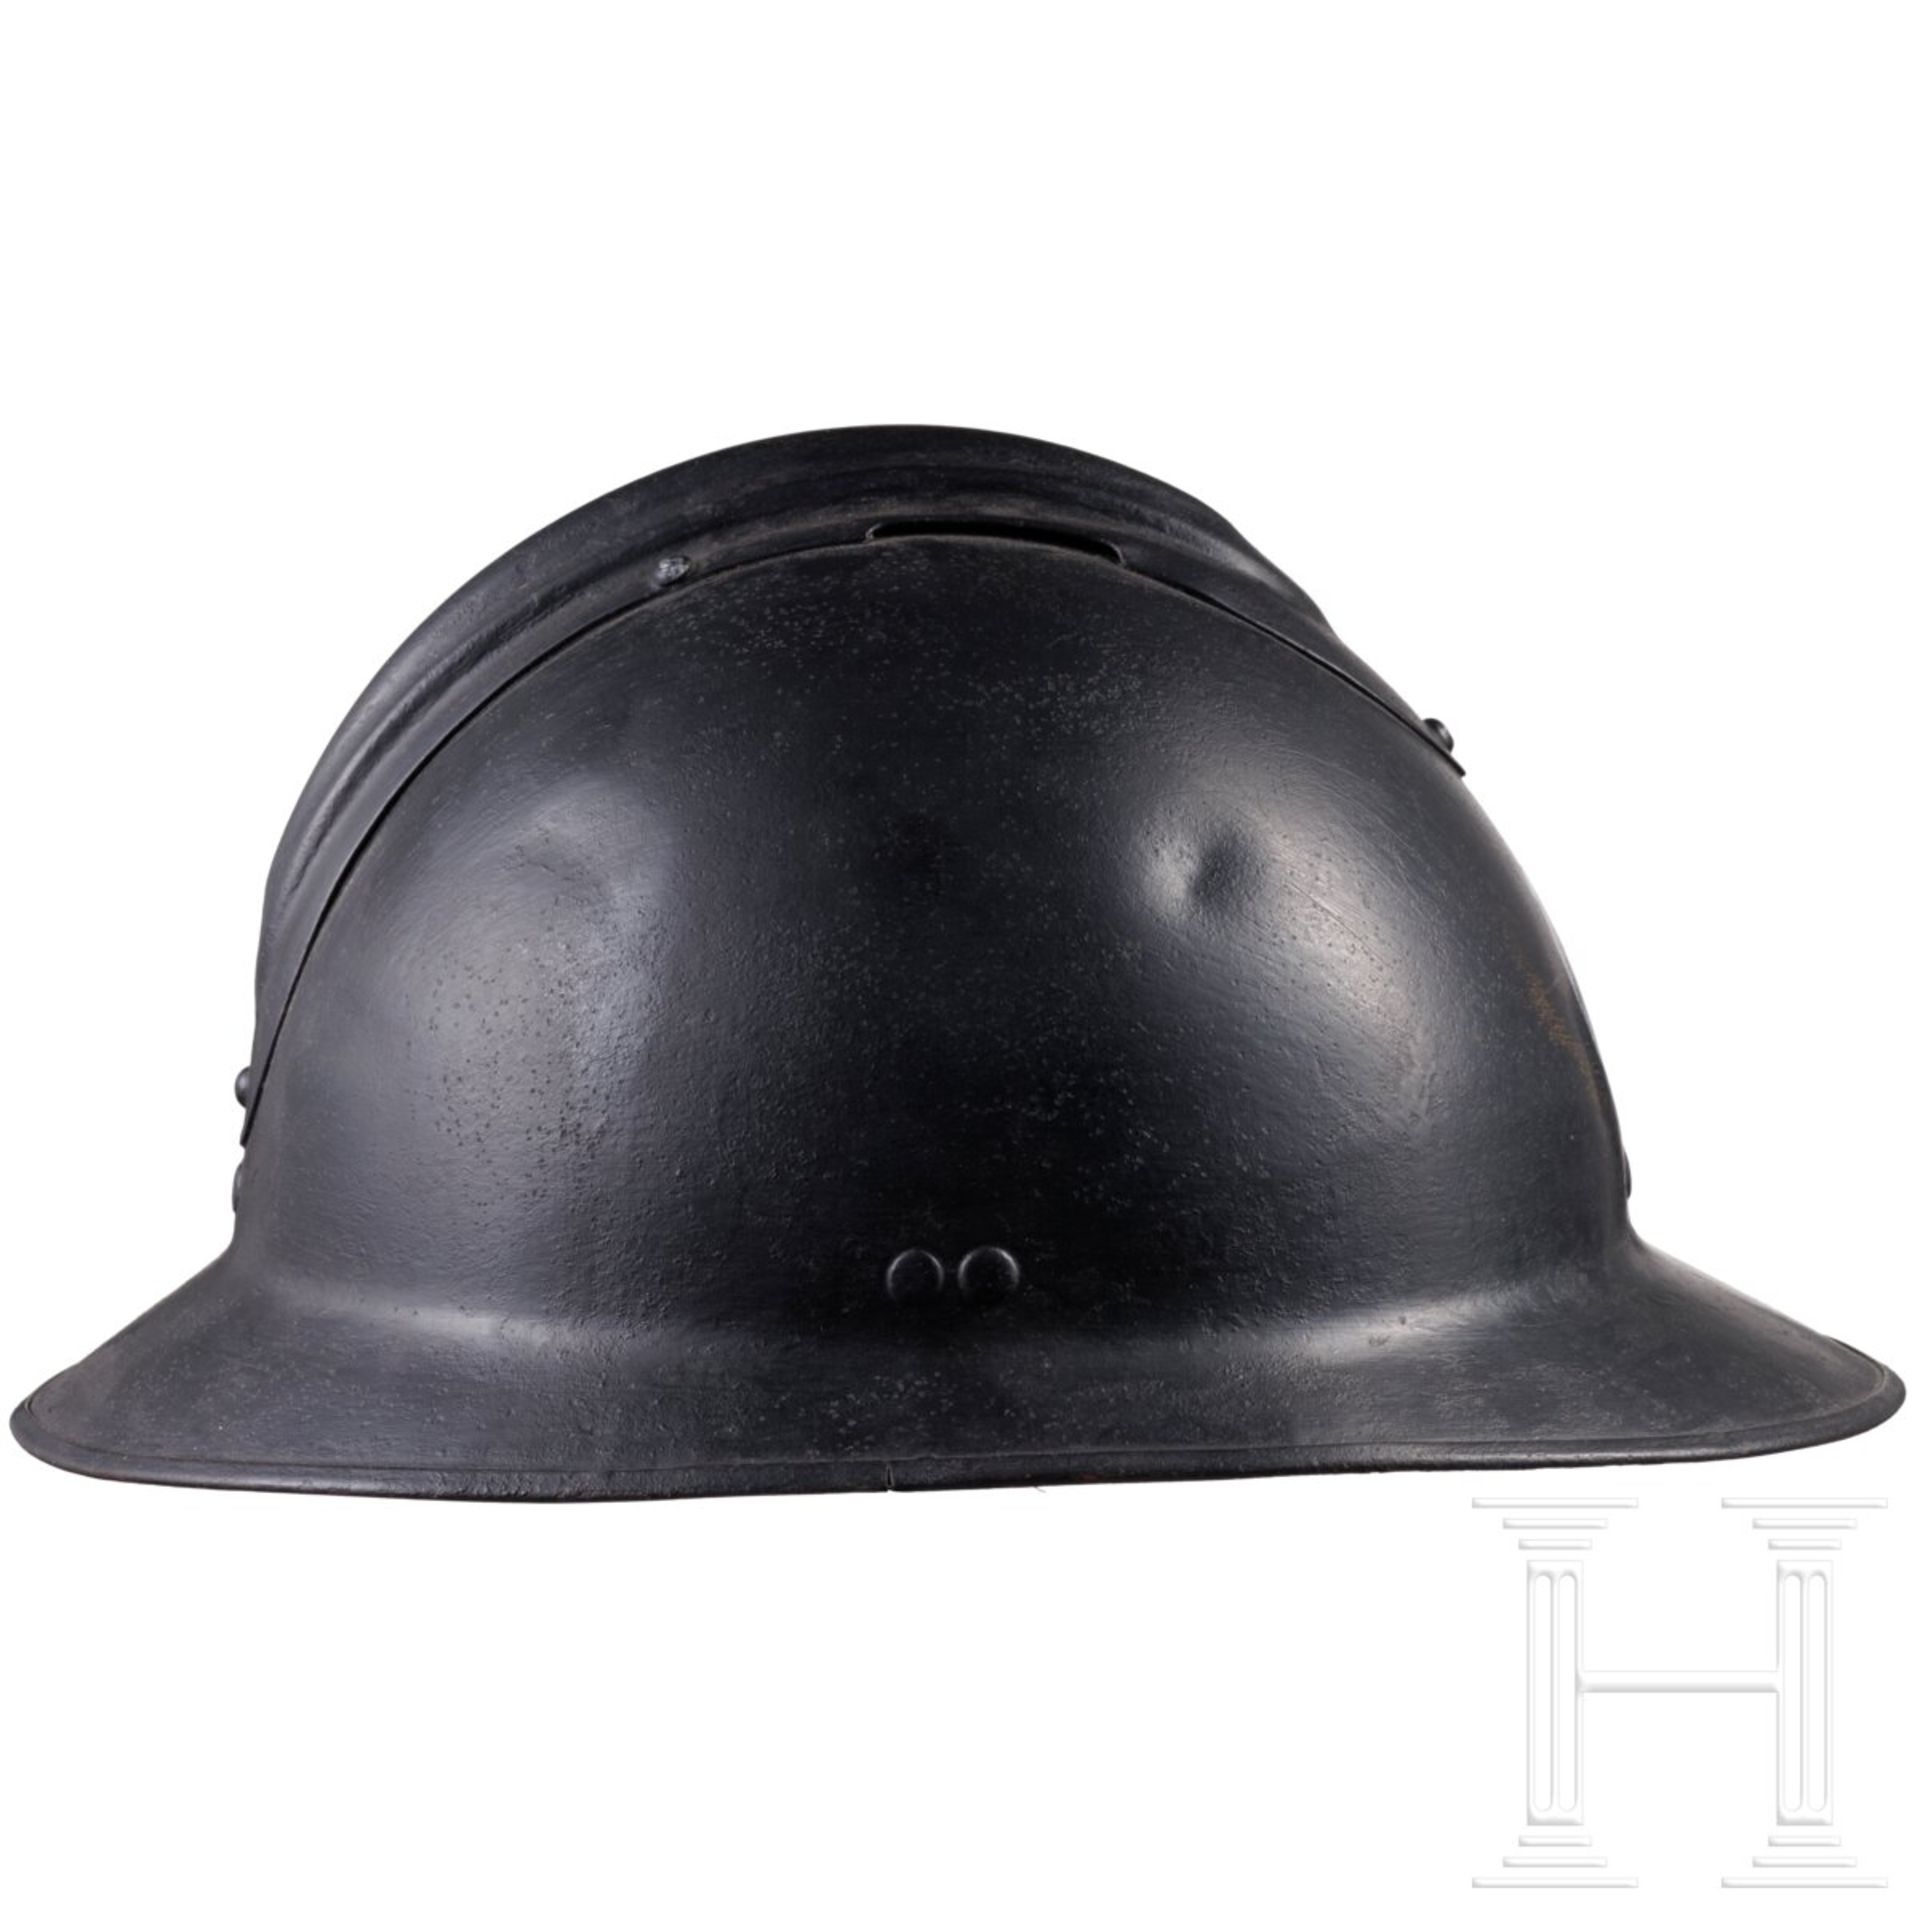 Stahlhelm M 26 Adrian mit Vichy-Emblem, 1940 - 1944 - Bild 2 aus 4